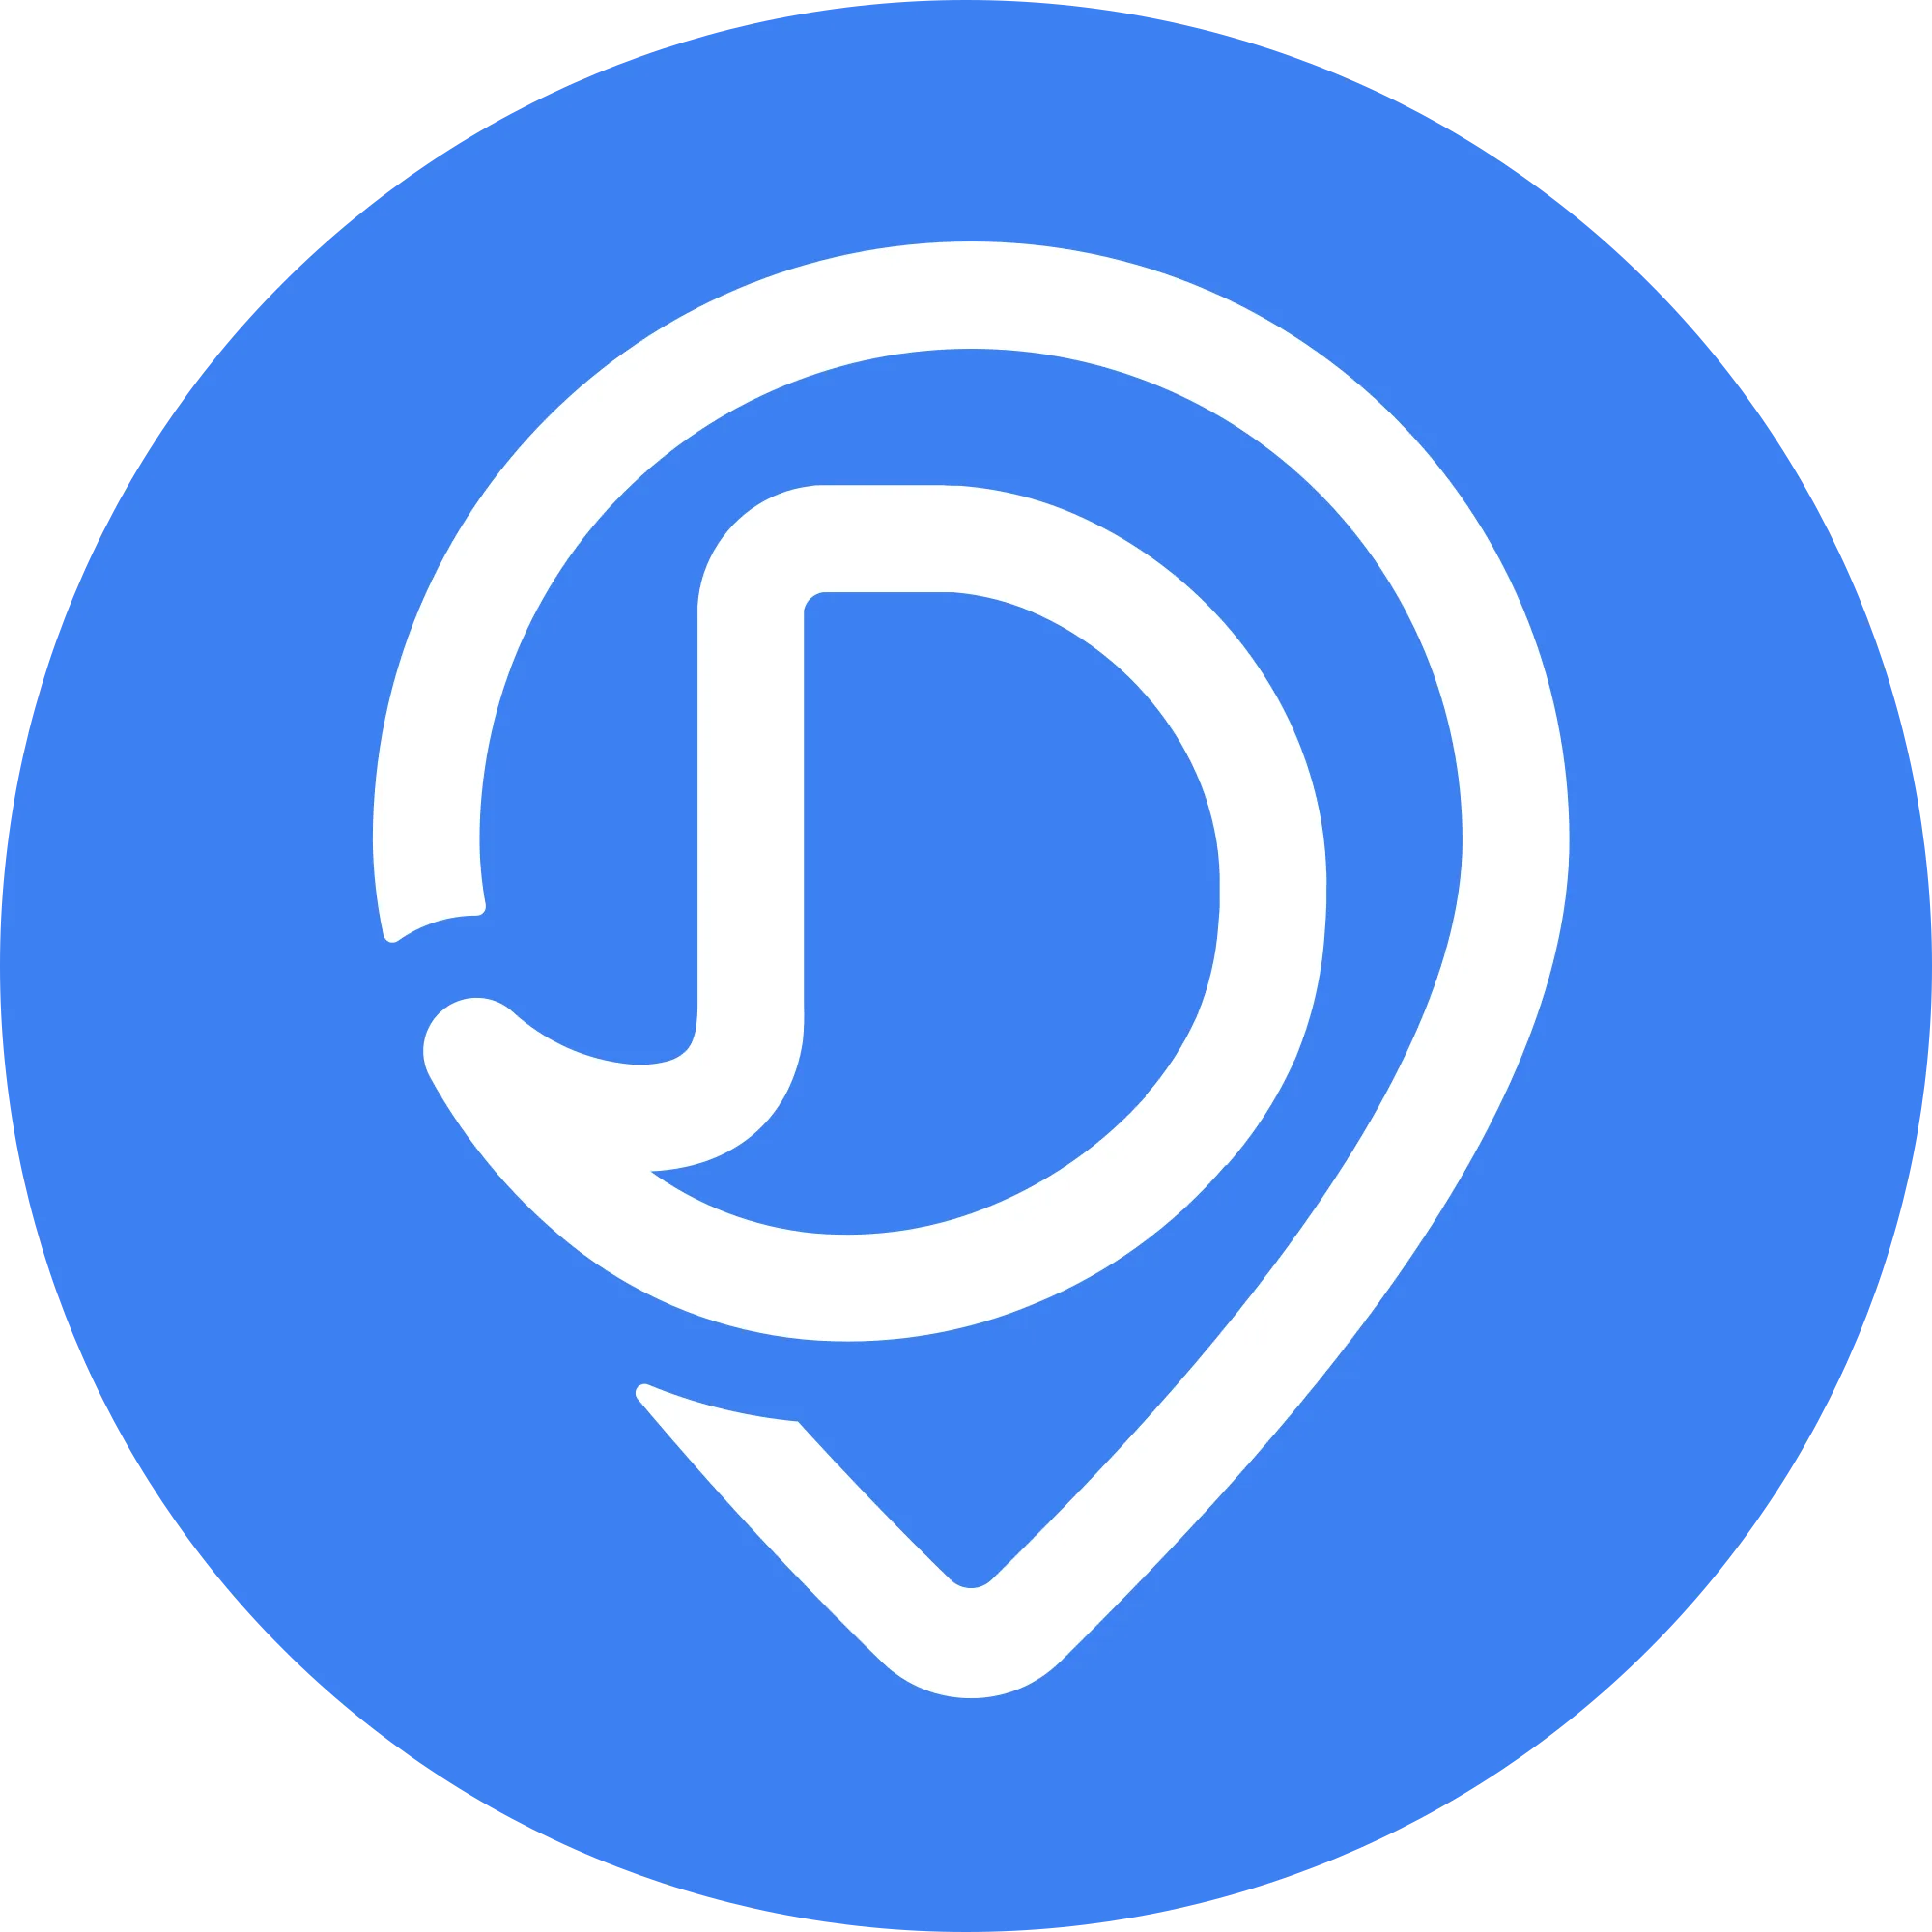 Dether logo in png format